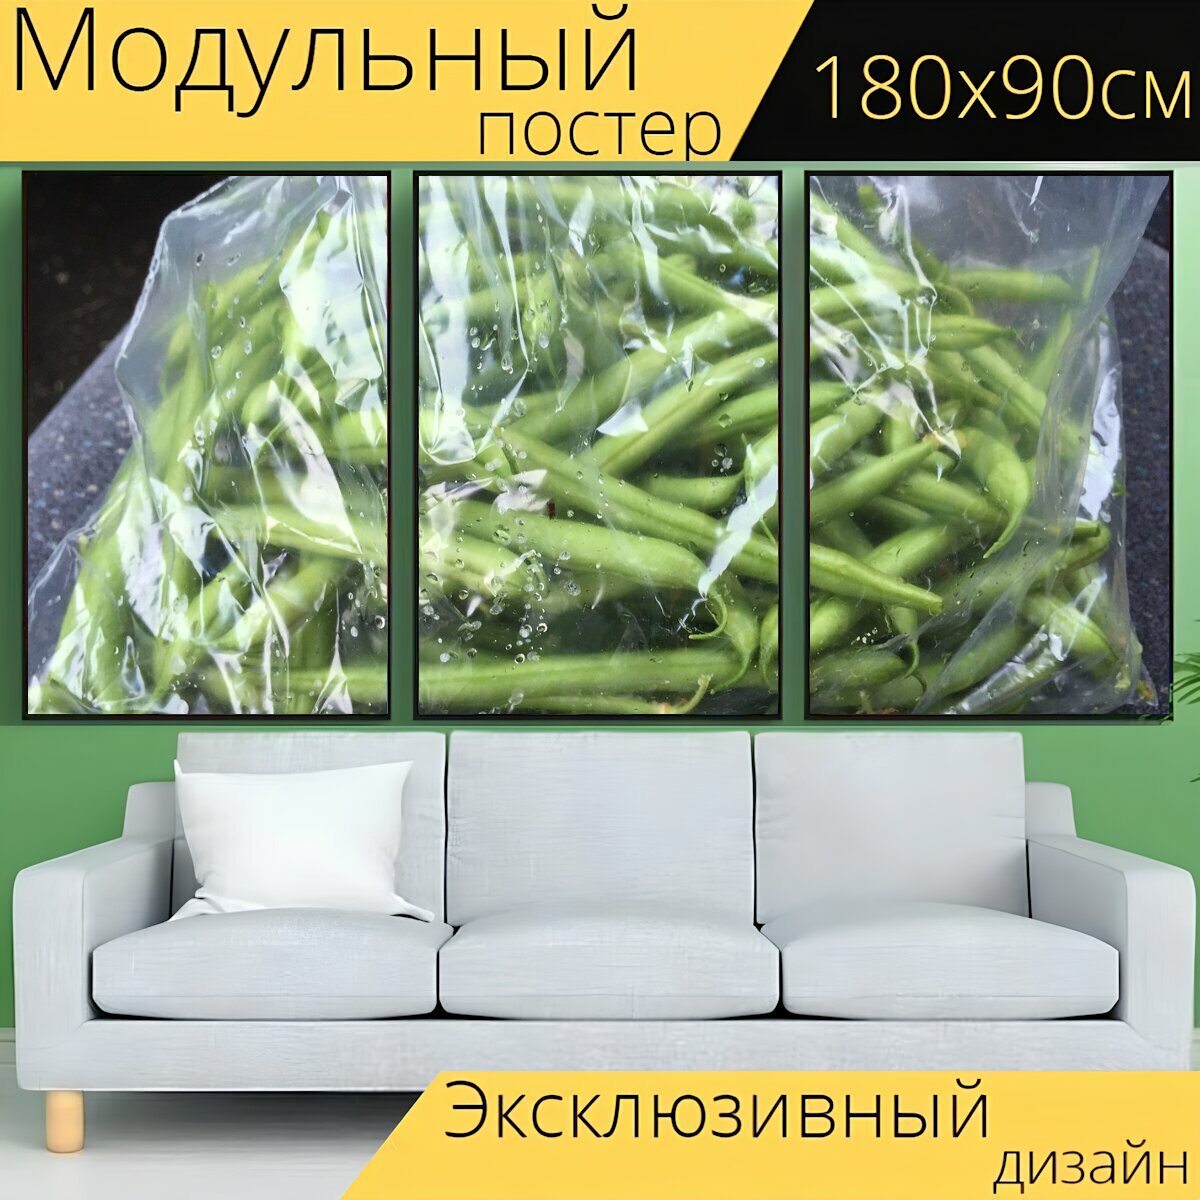 Модульный постер "Стручковая фасоль, полиэтиленовый пакет, овощ" 180 x 90 см. для интерьера